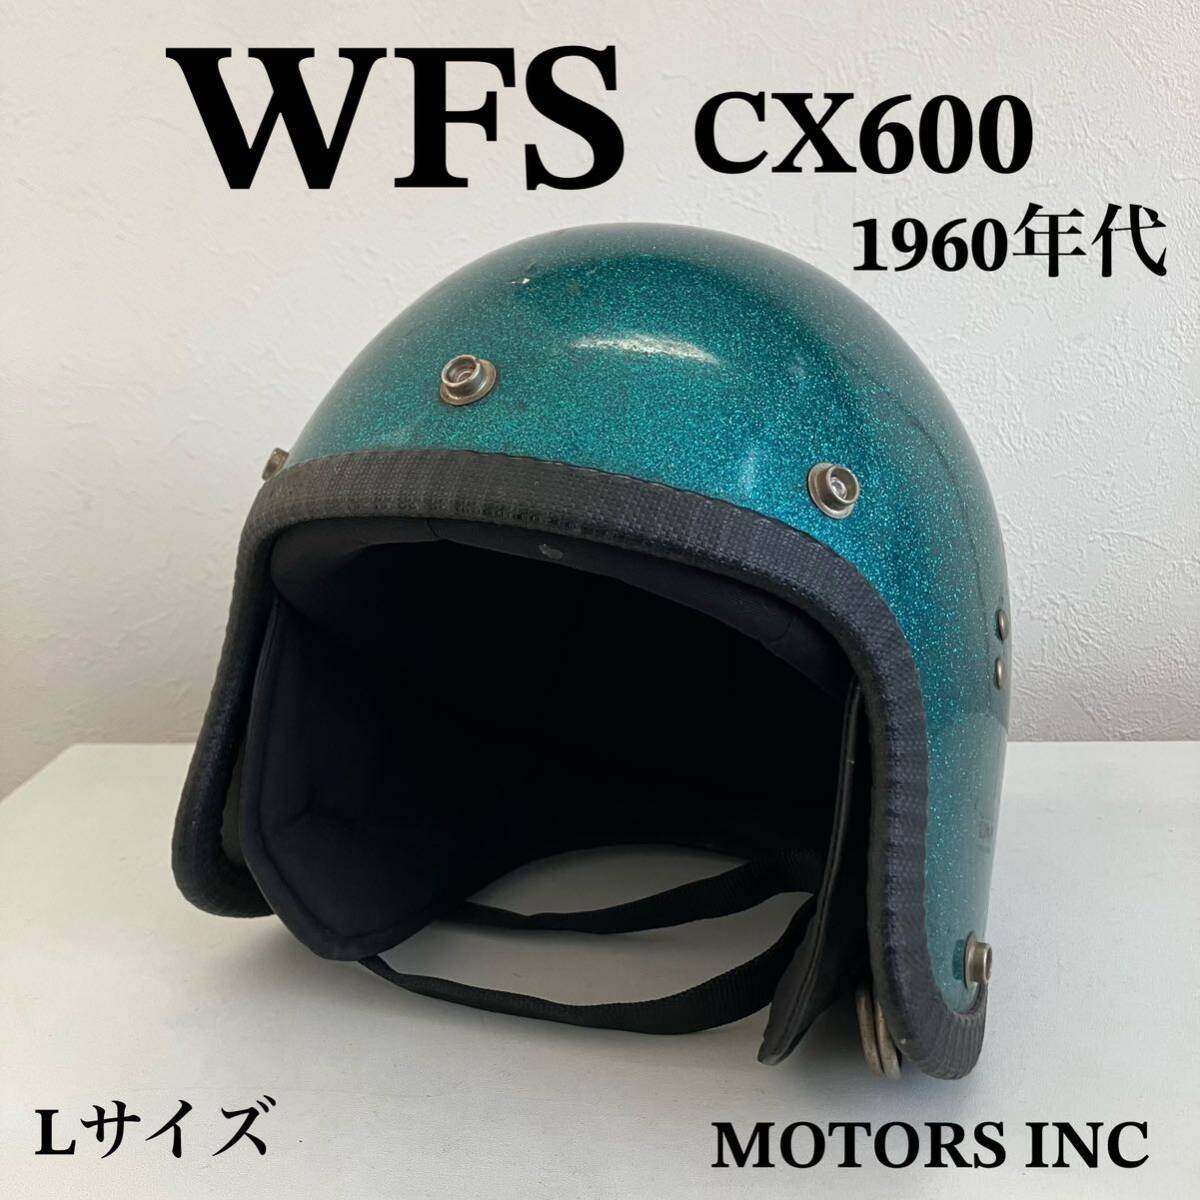 ビンテージヘルメット★WFS CX600 1960年代 ジェット ヘルメット Lサイズ ハーレー 末広がり 緑 バイク 当時物 北海道 札幌 MOTORS INC_画像1